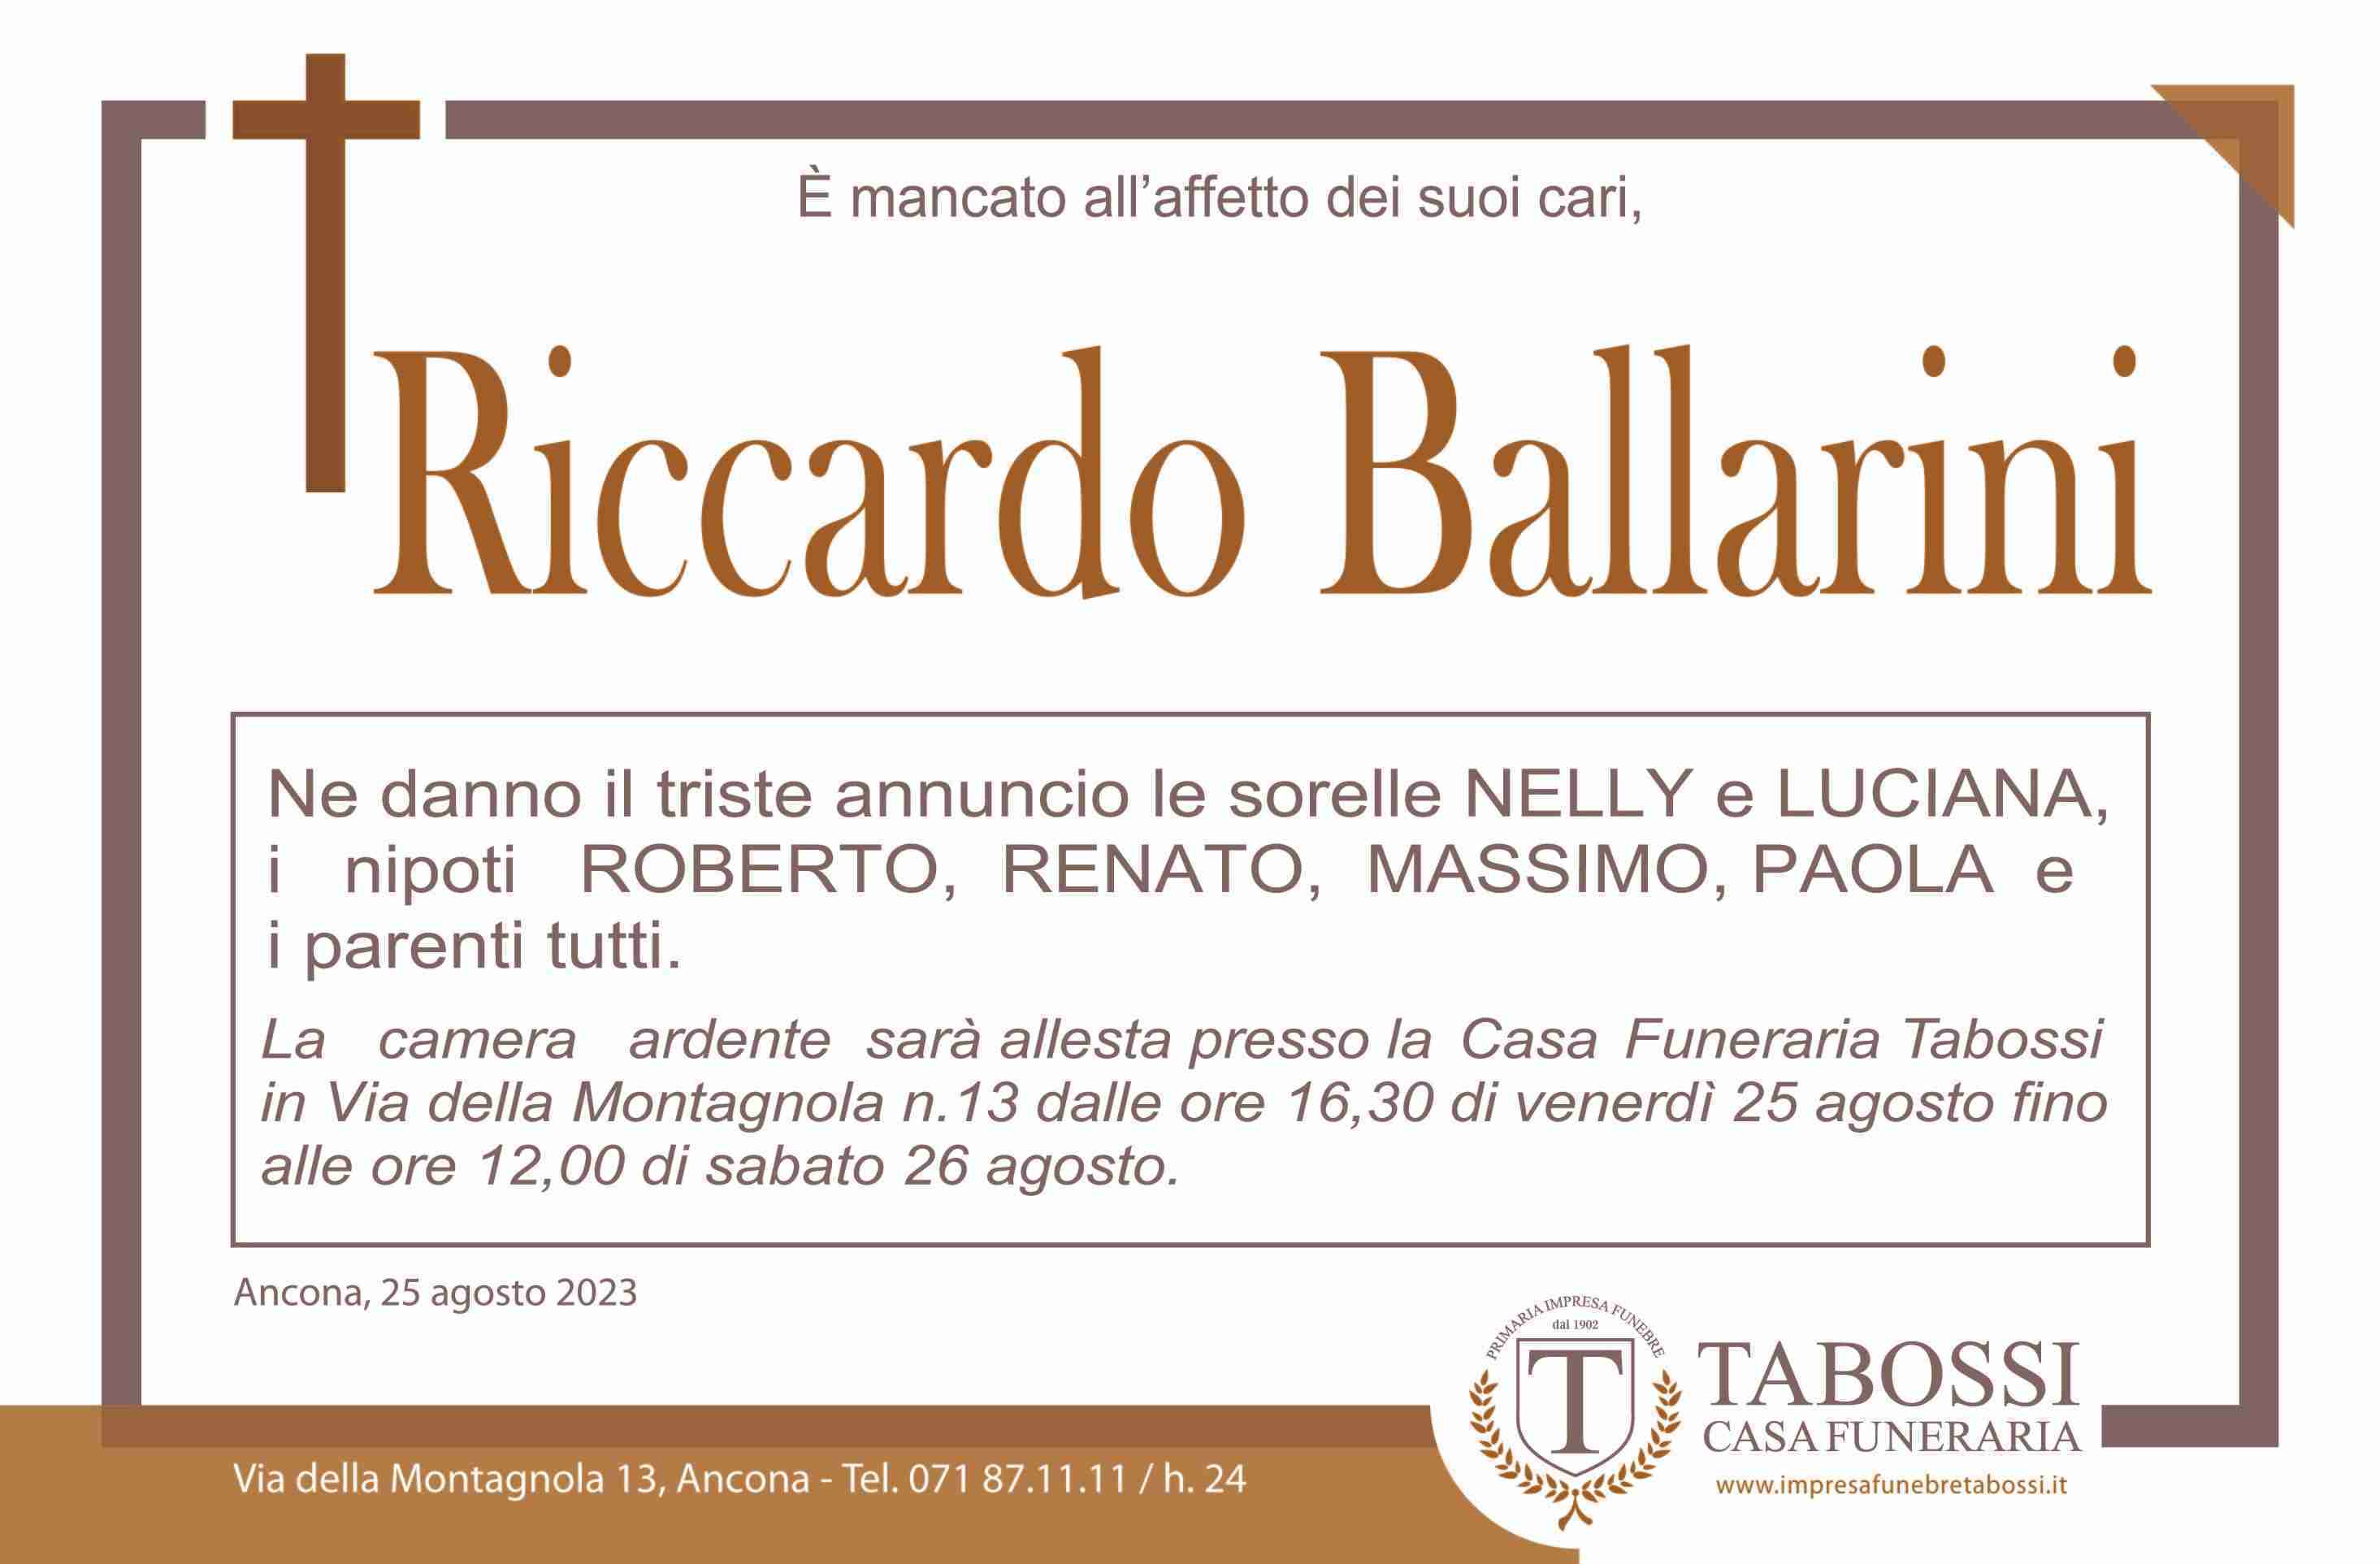 Riccardo Ballarini